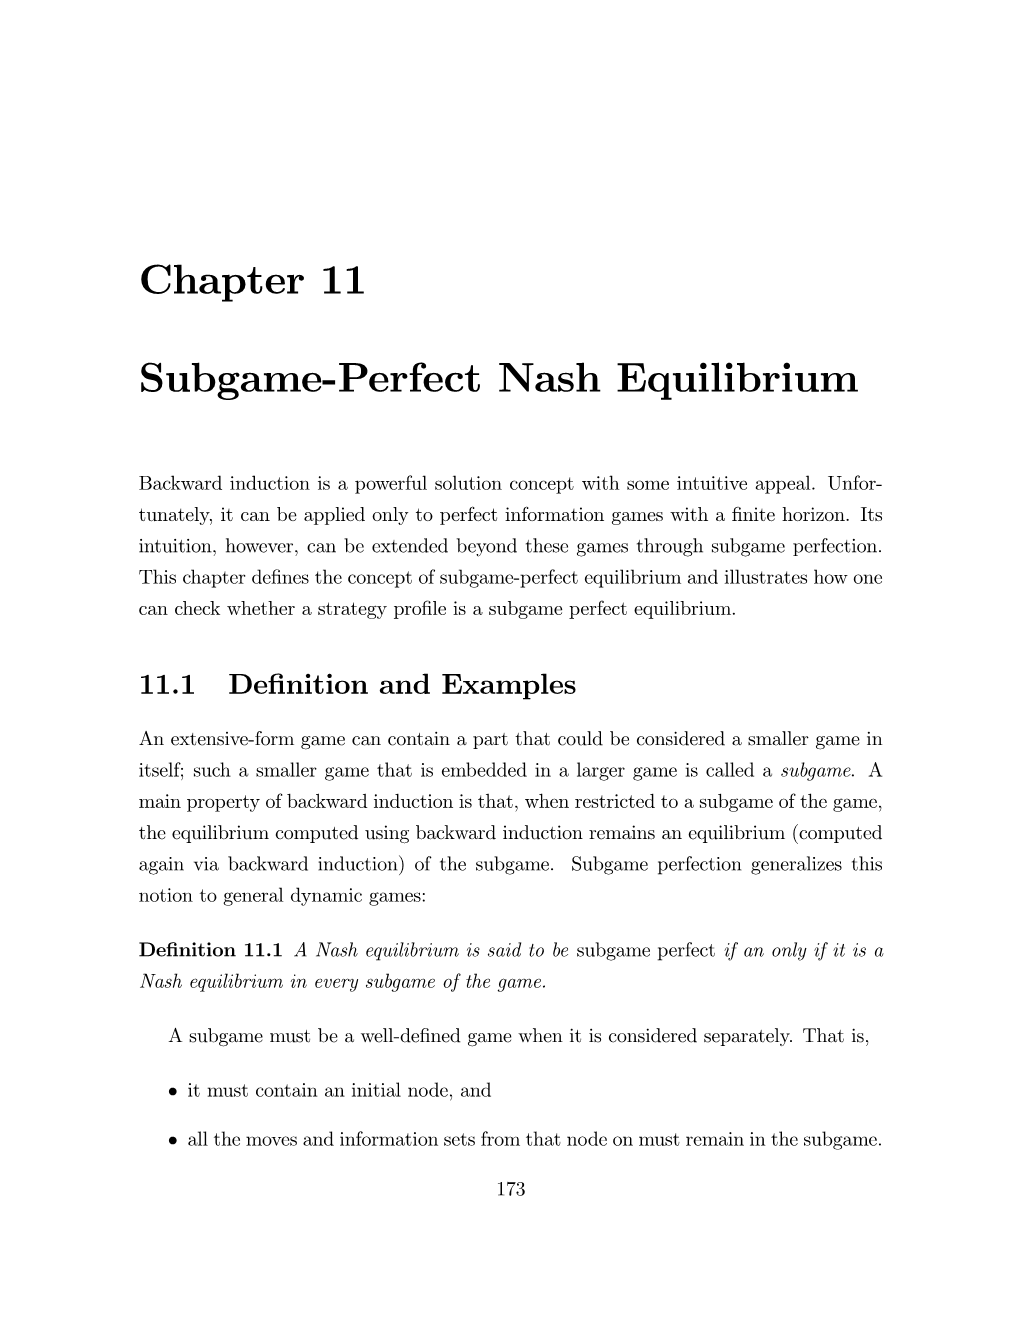 Subgame-Perfect Nash Equilibrium